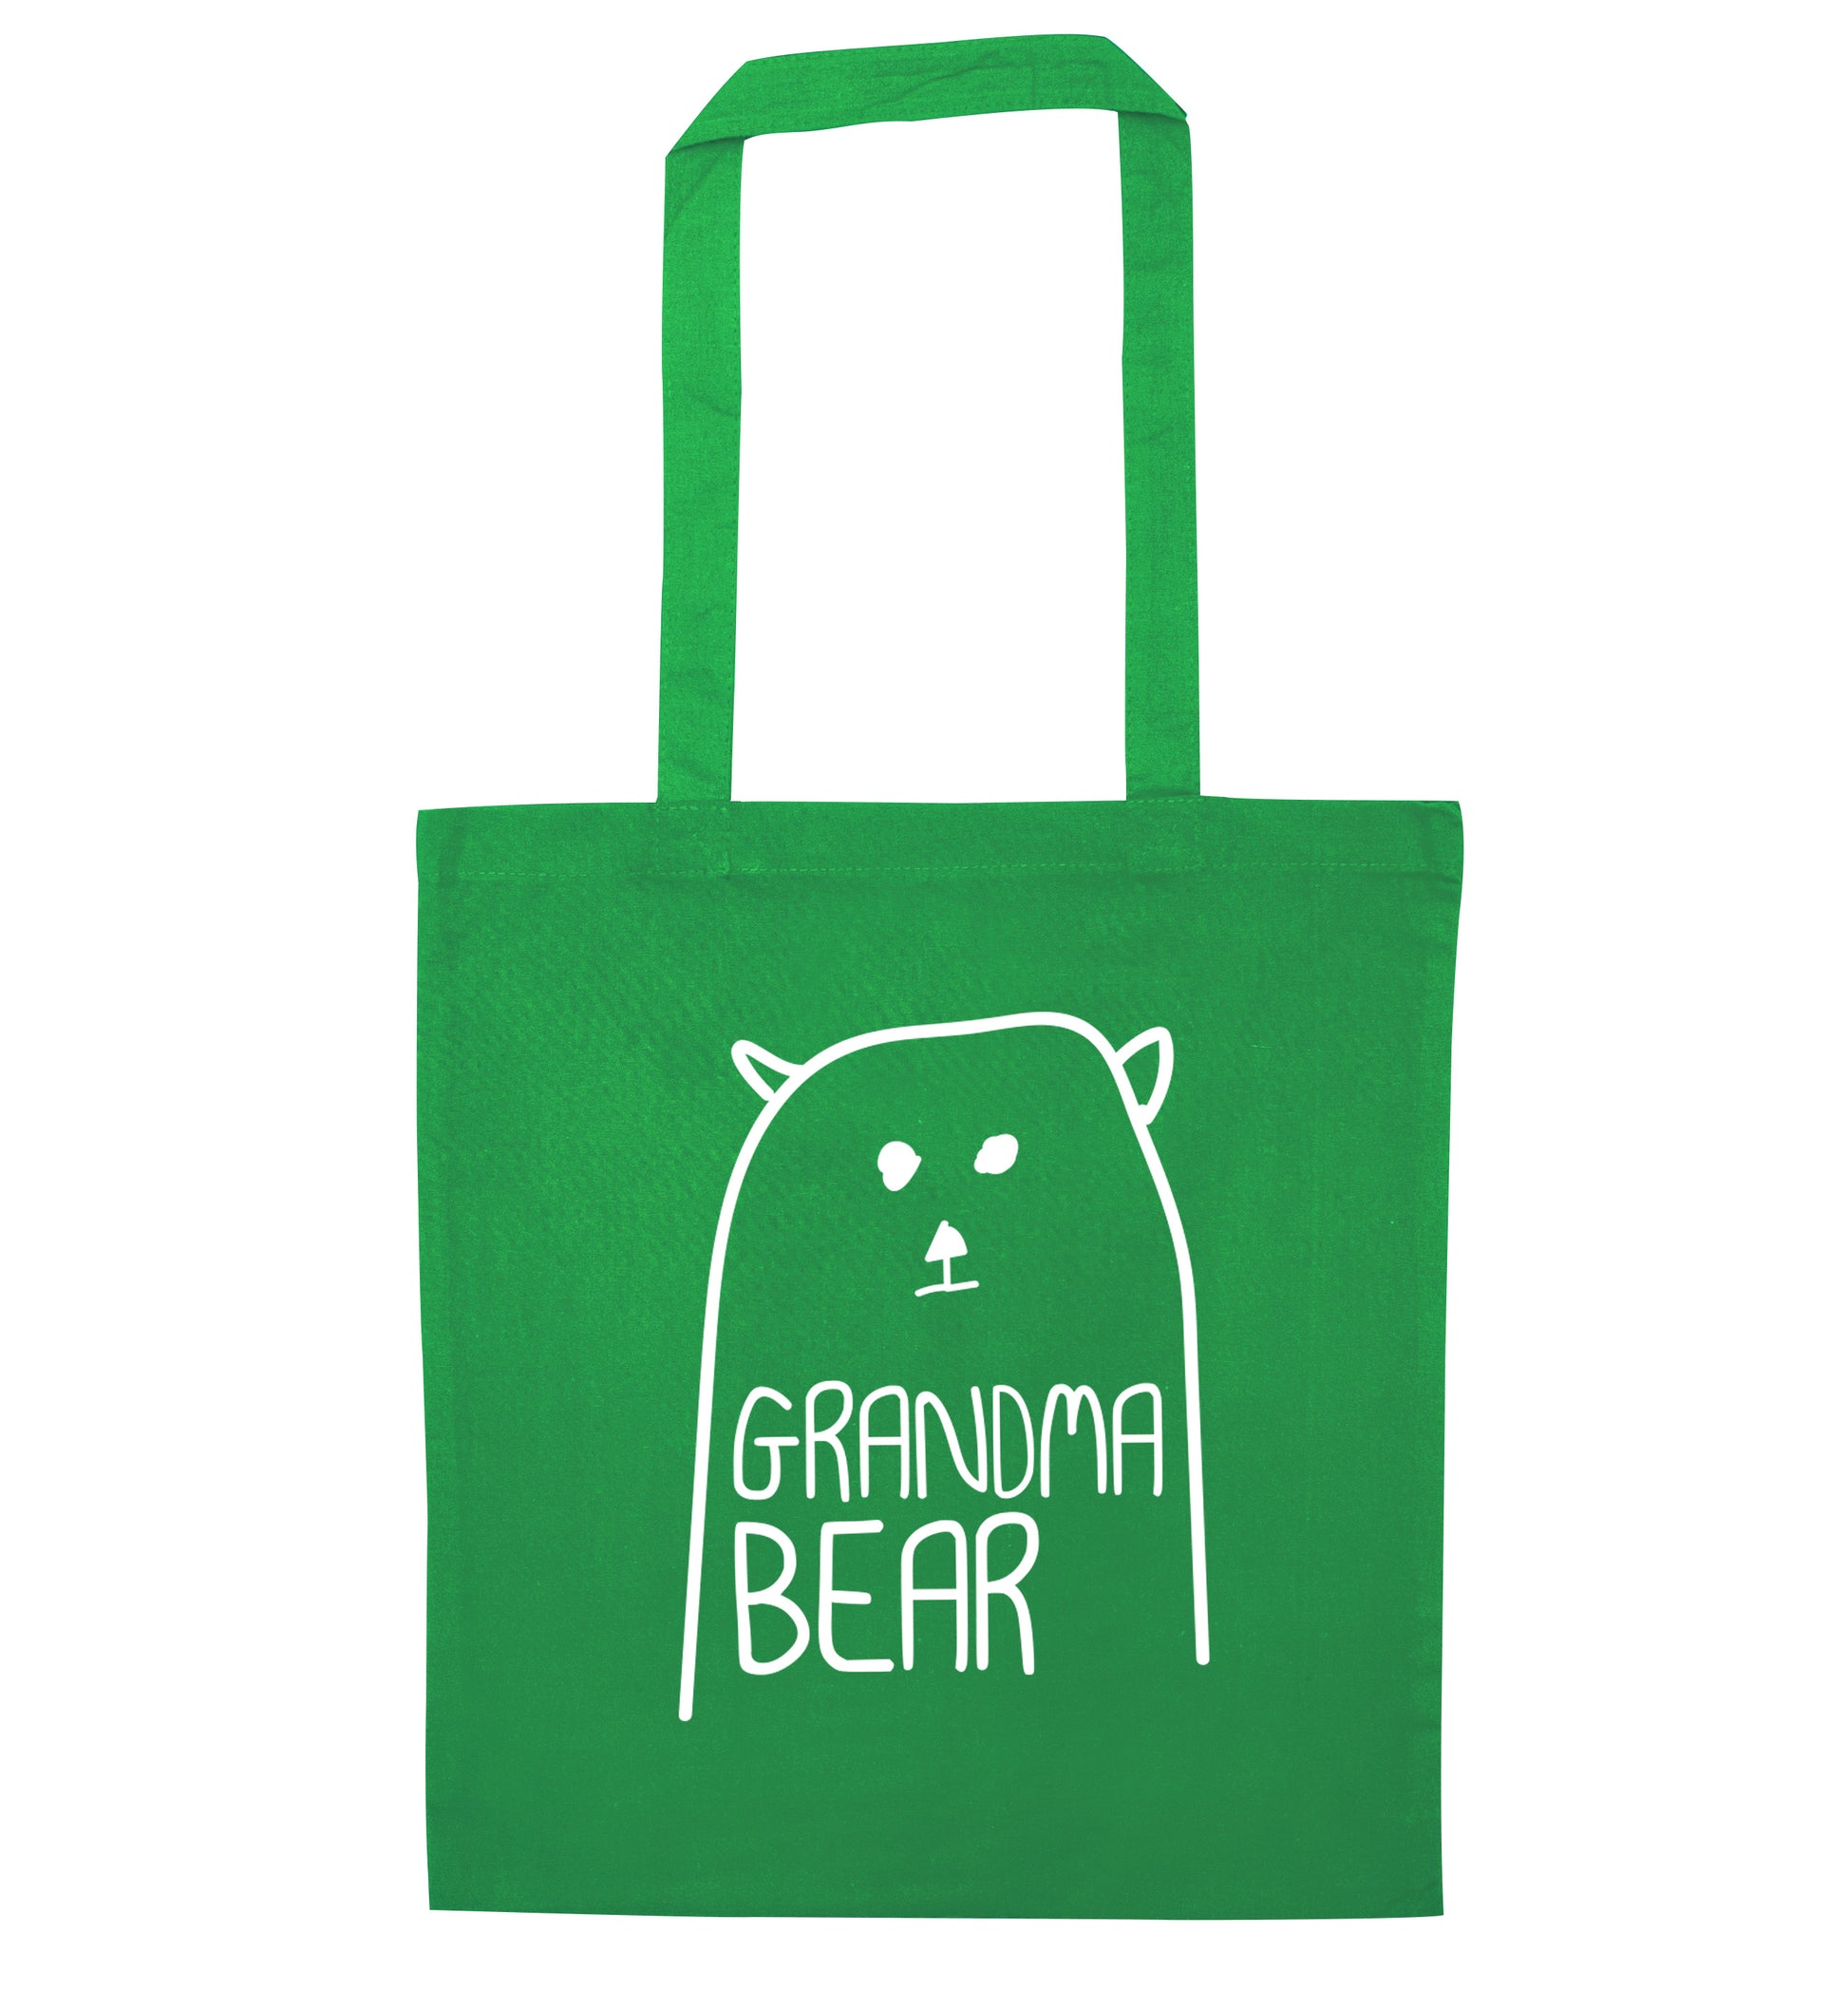 Grandma bear green tote bag